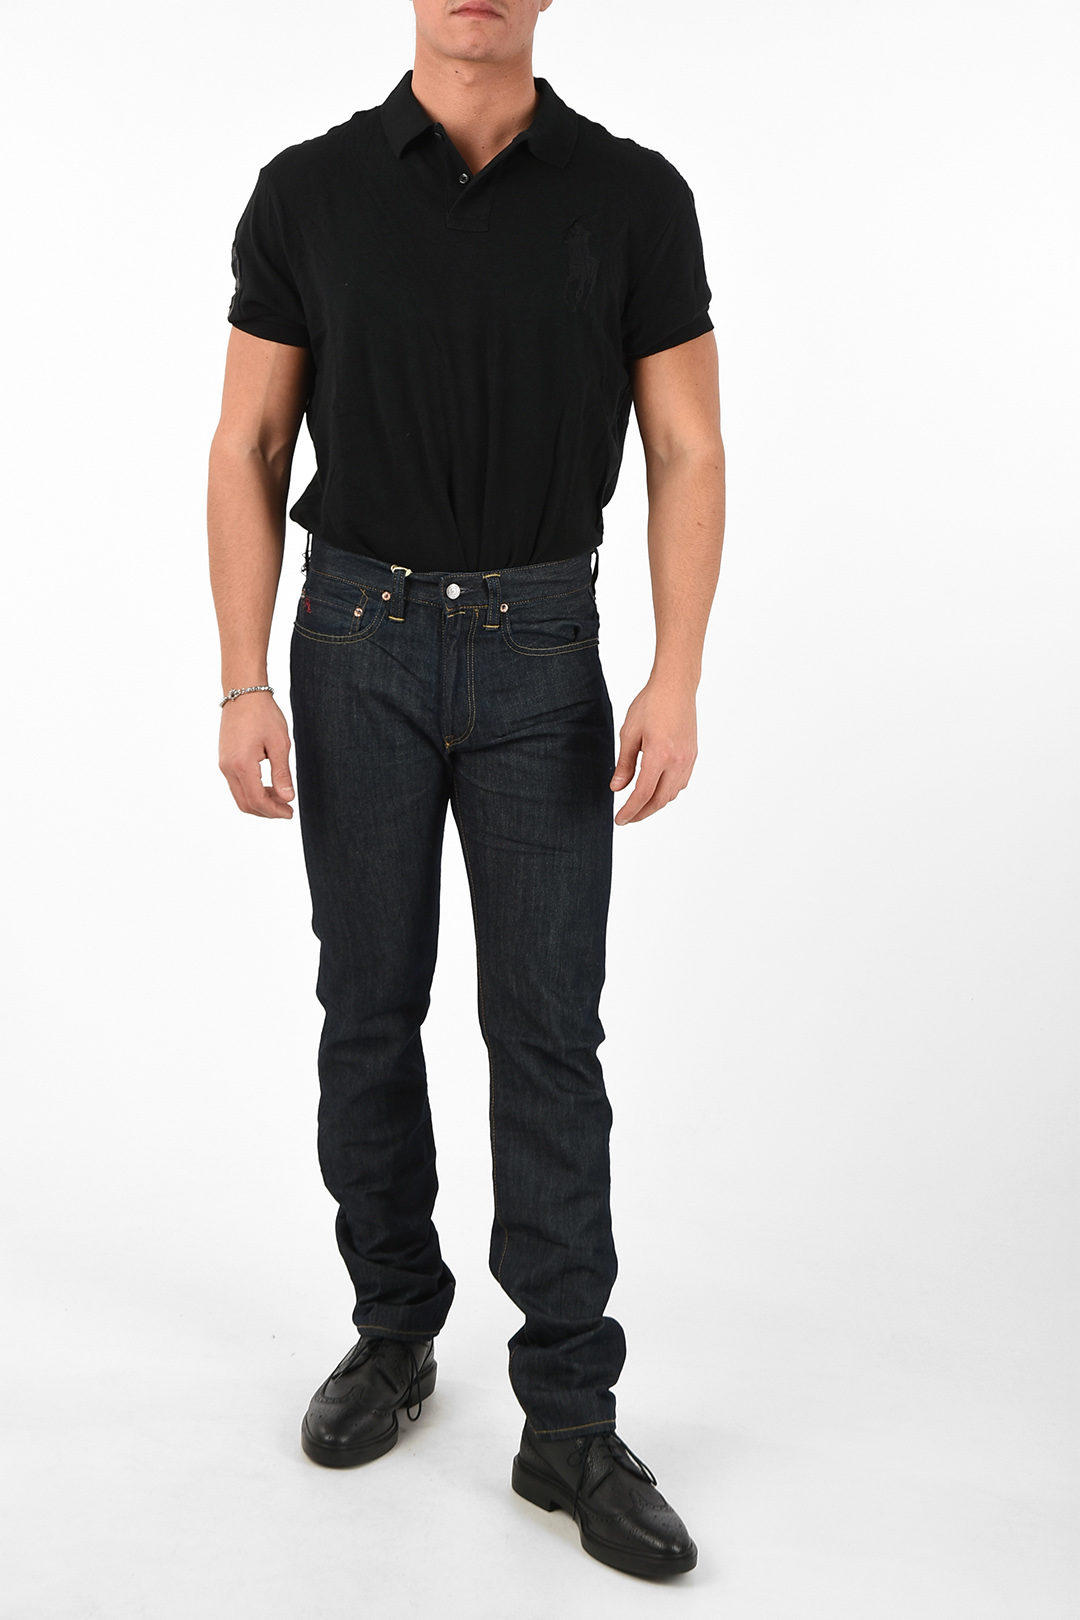 hartstochtelijk Mogelijk astronomie Polo Ralph Lauren 19cm slim fit 381 jeans L34 men - Glamood Outlet